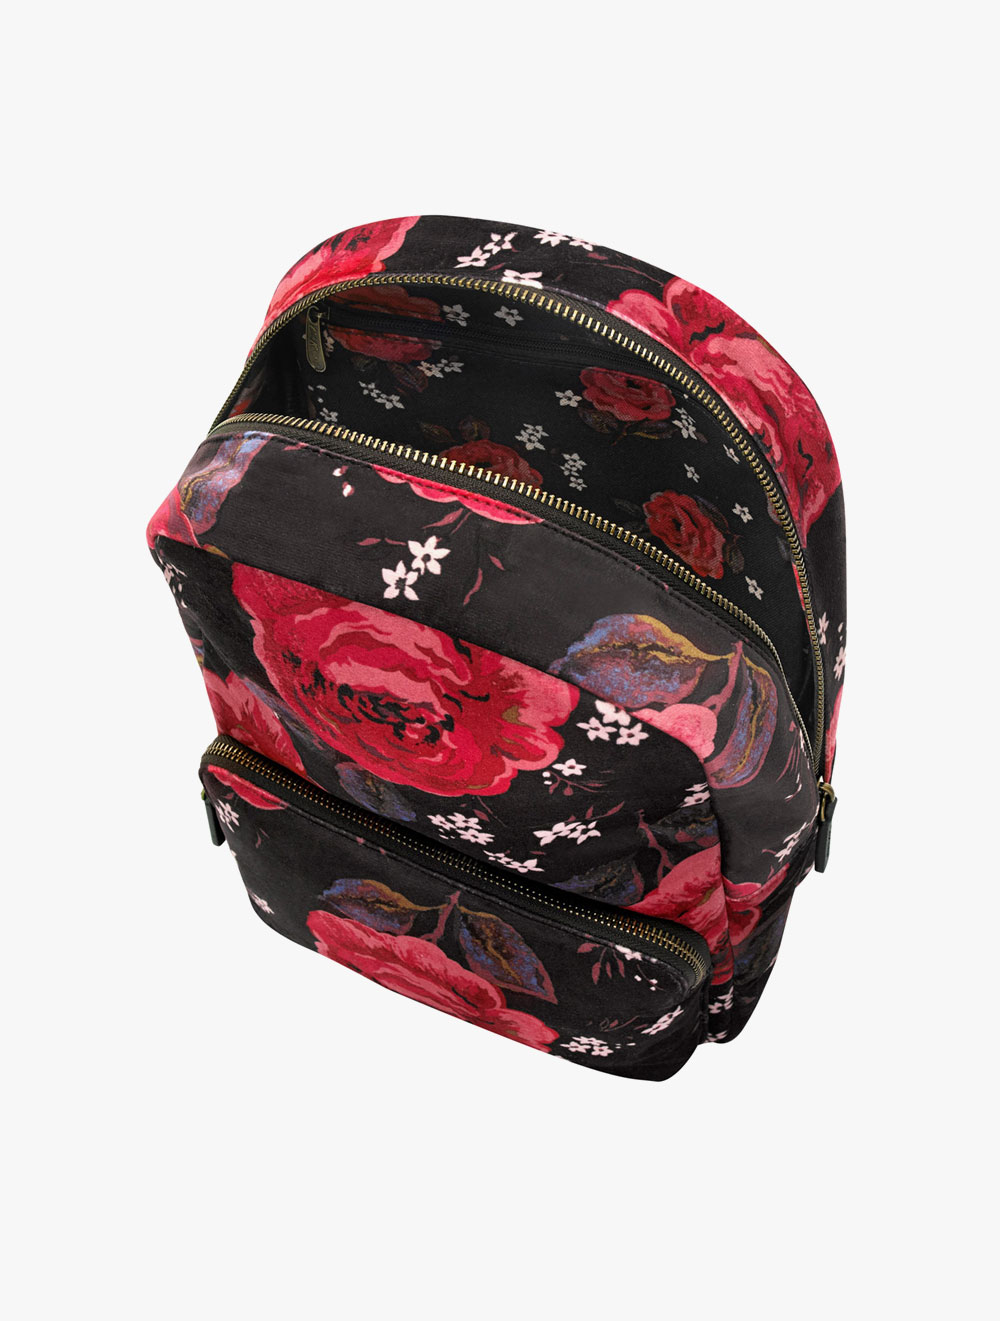 cath kidston jacquard rose velvet backpack